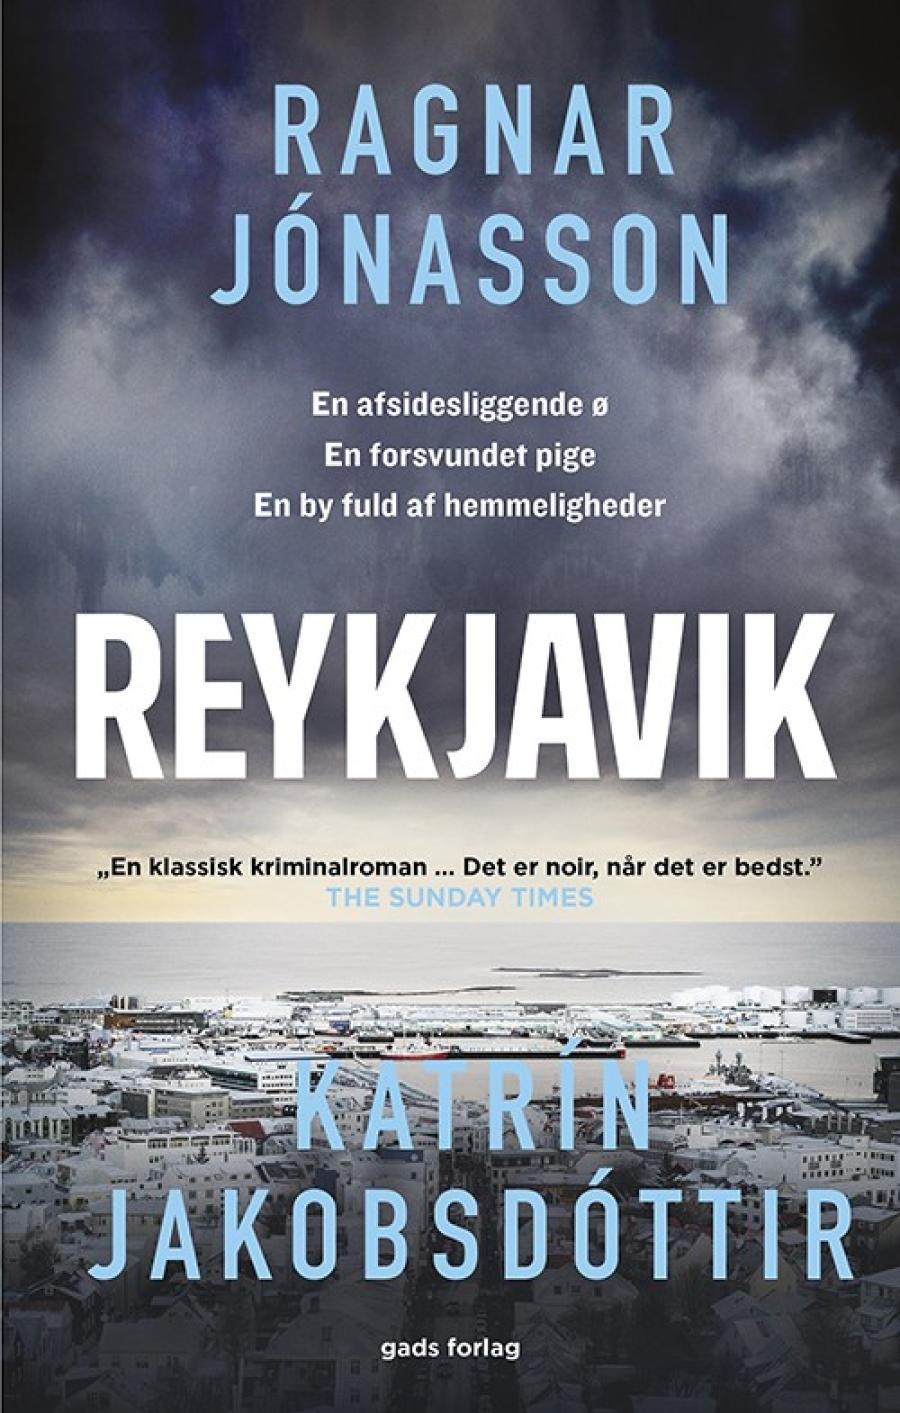 Forsiden af krimien Reykjavik